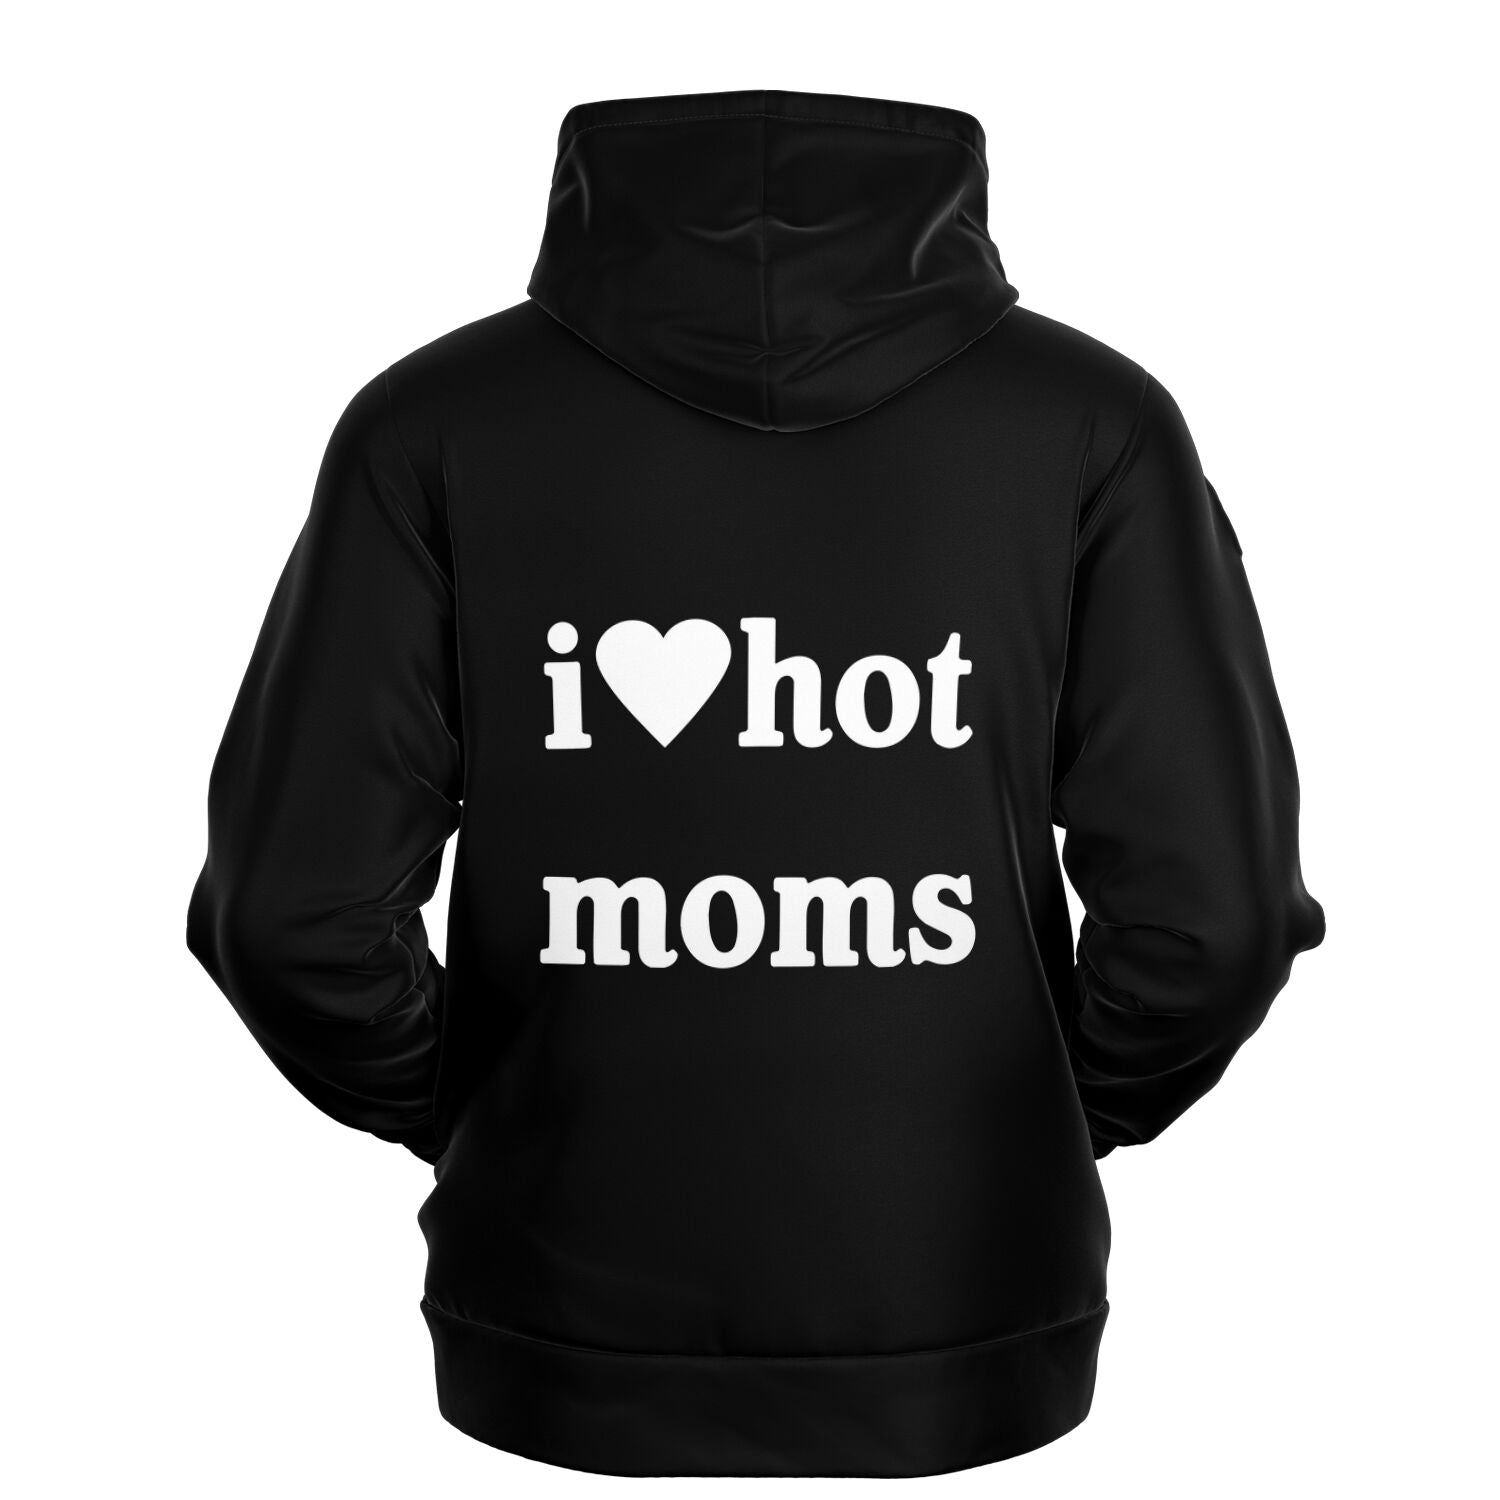 I Love Hot Moms Hoodie